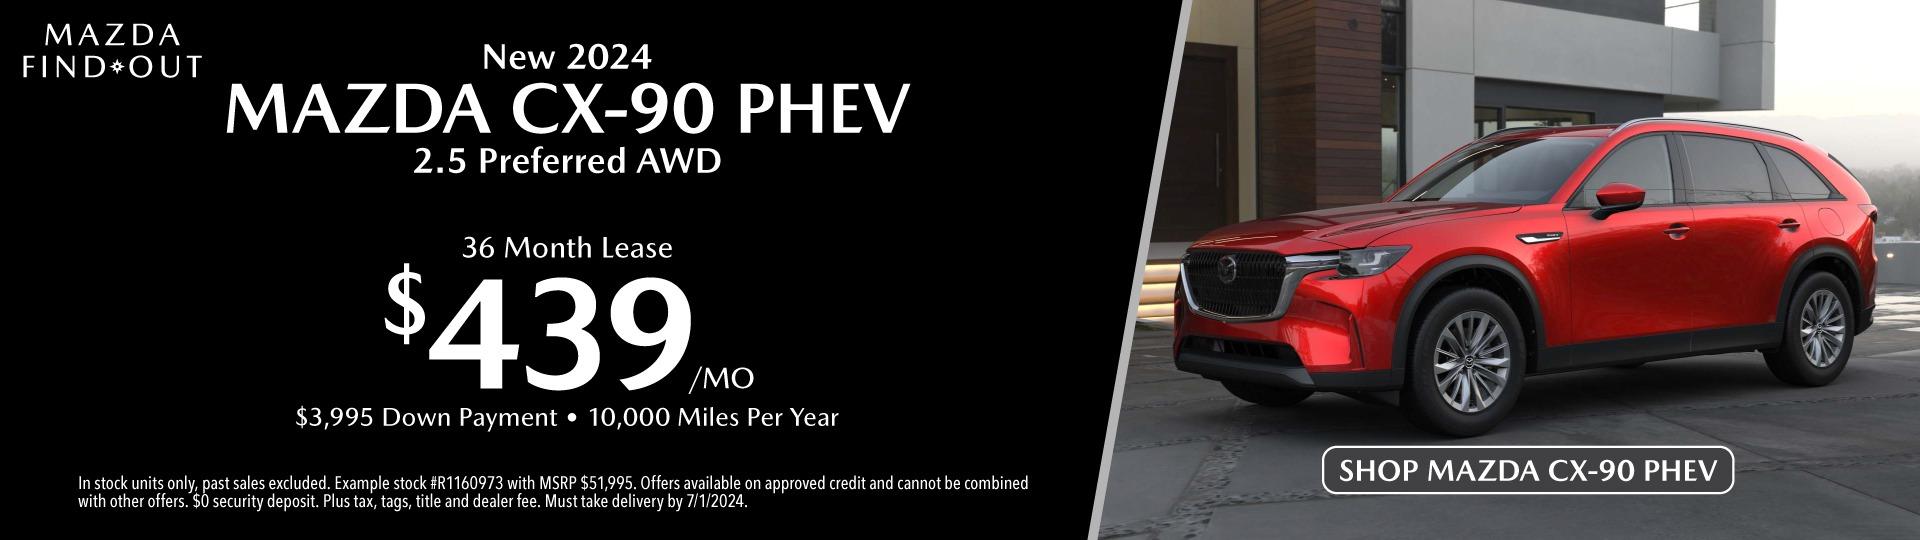 New 2024 Mazda CX-90 PHEV 2.5 Preferred AWD